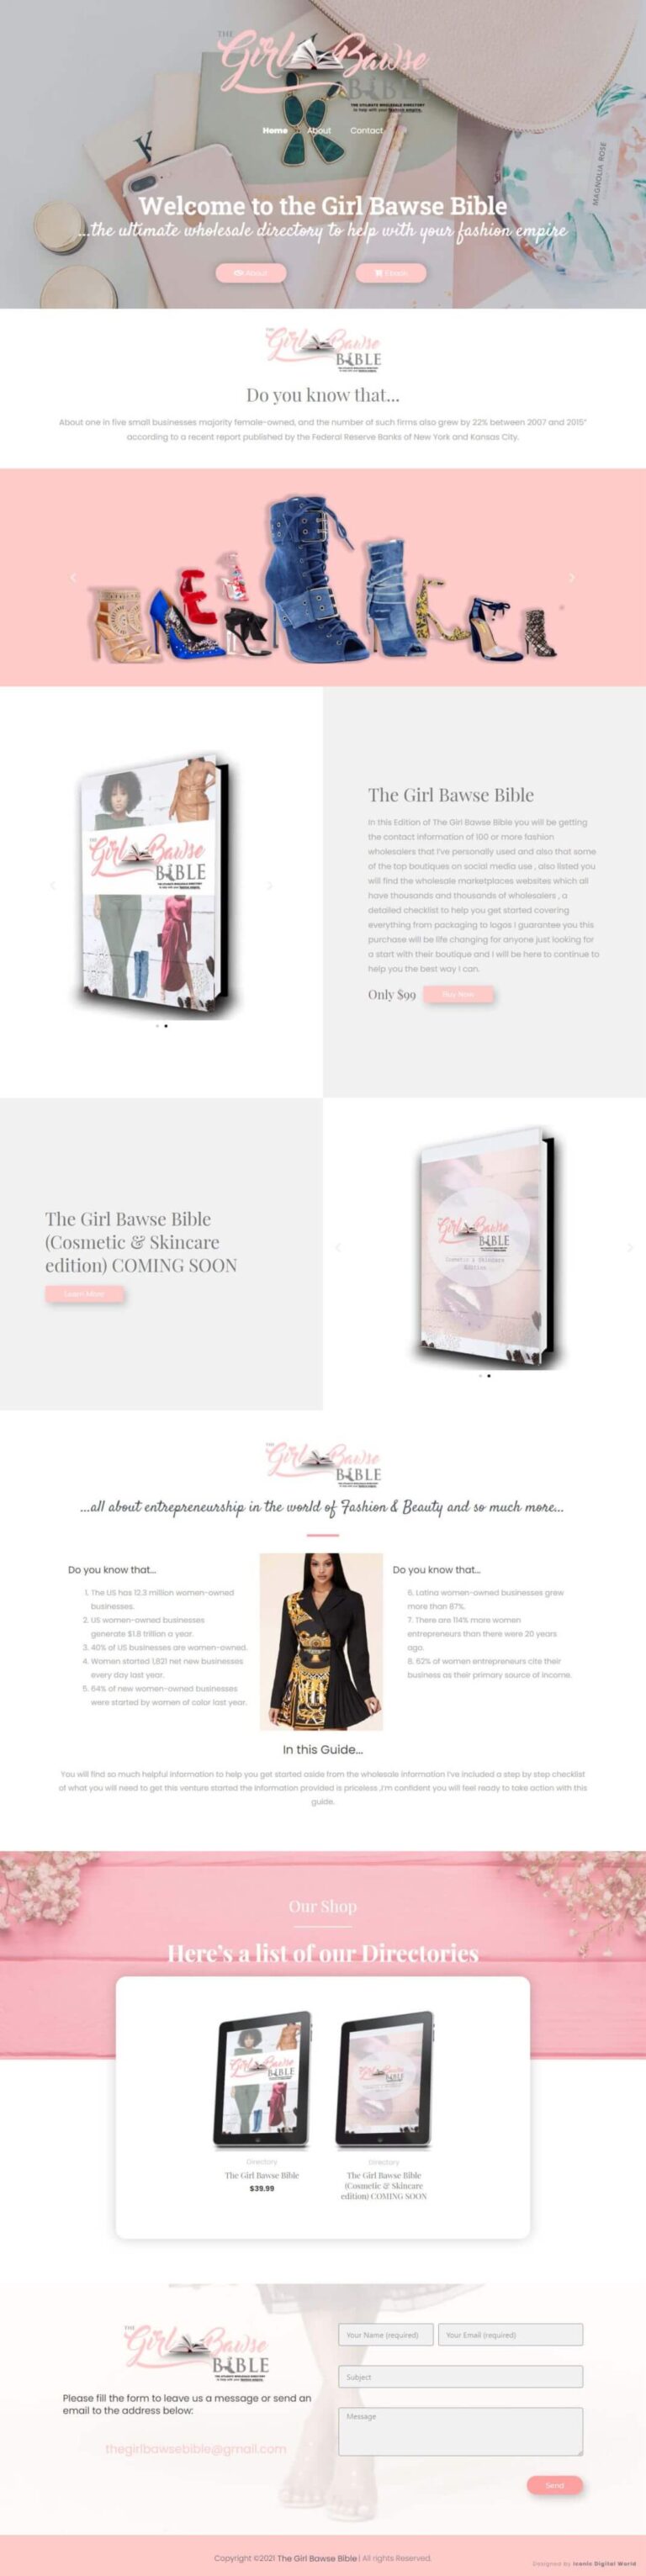 The Girl bawse bible Website Design